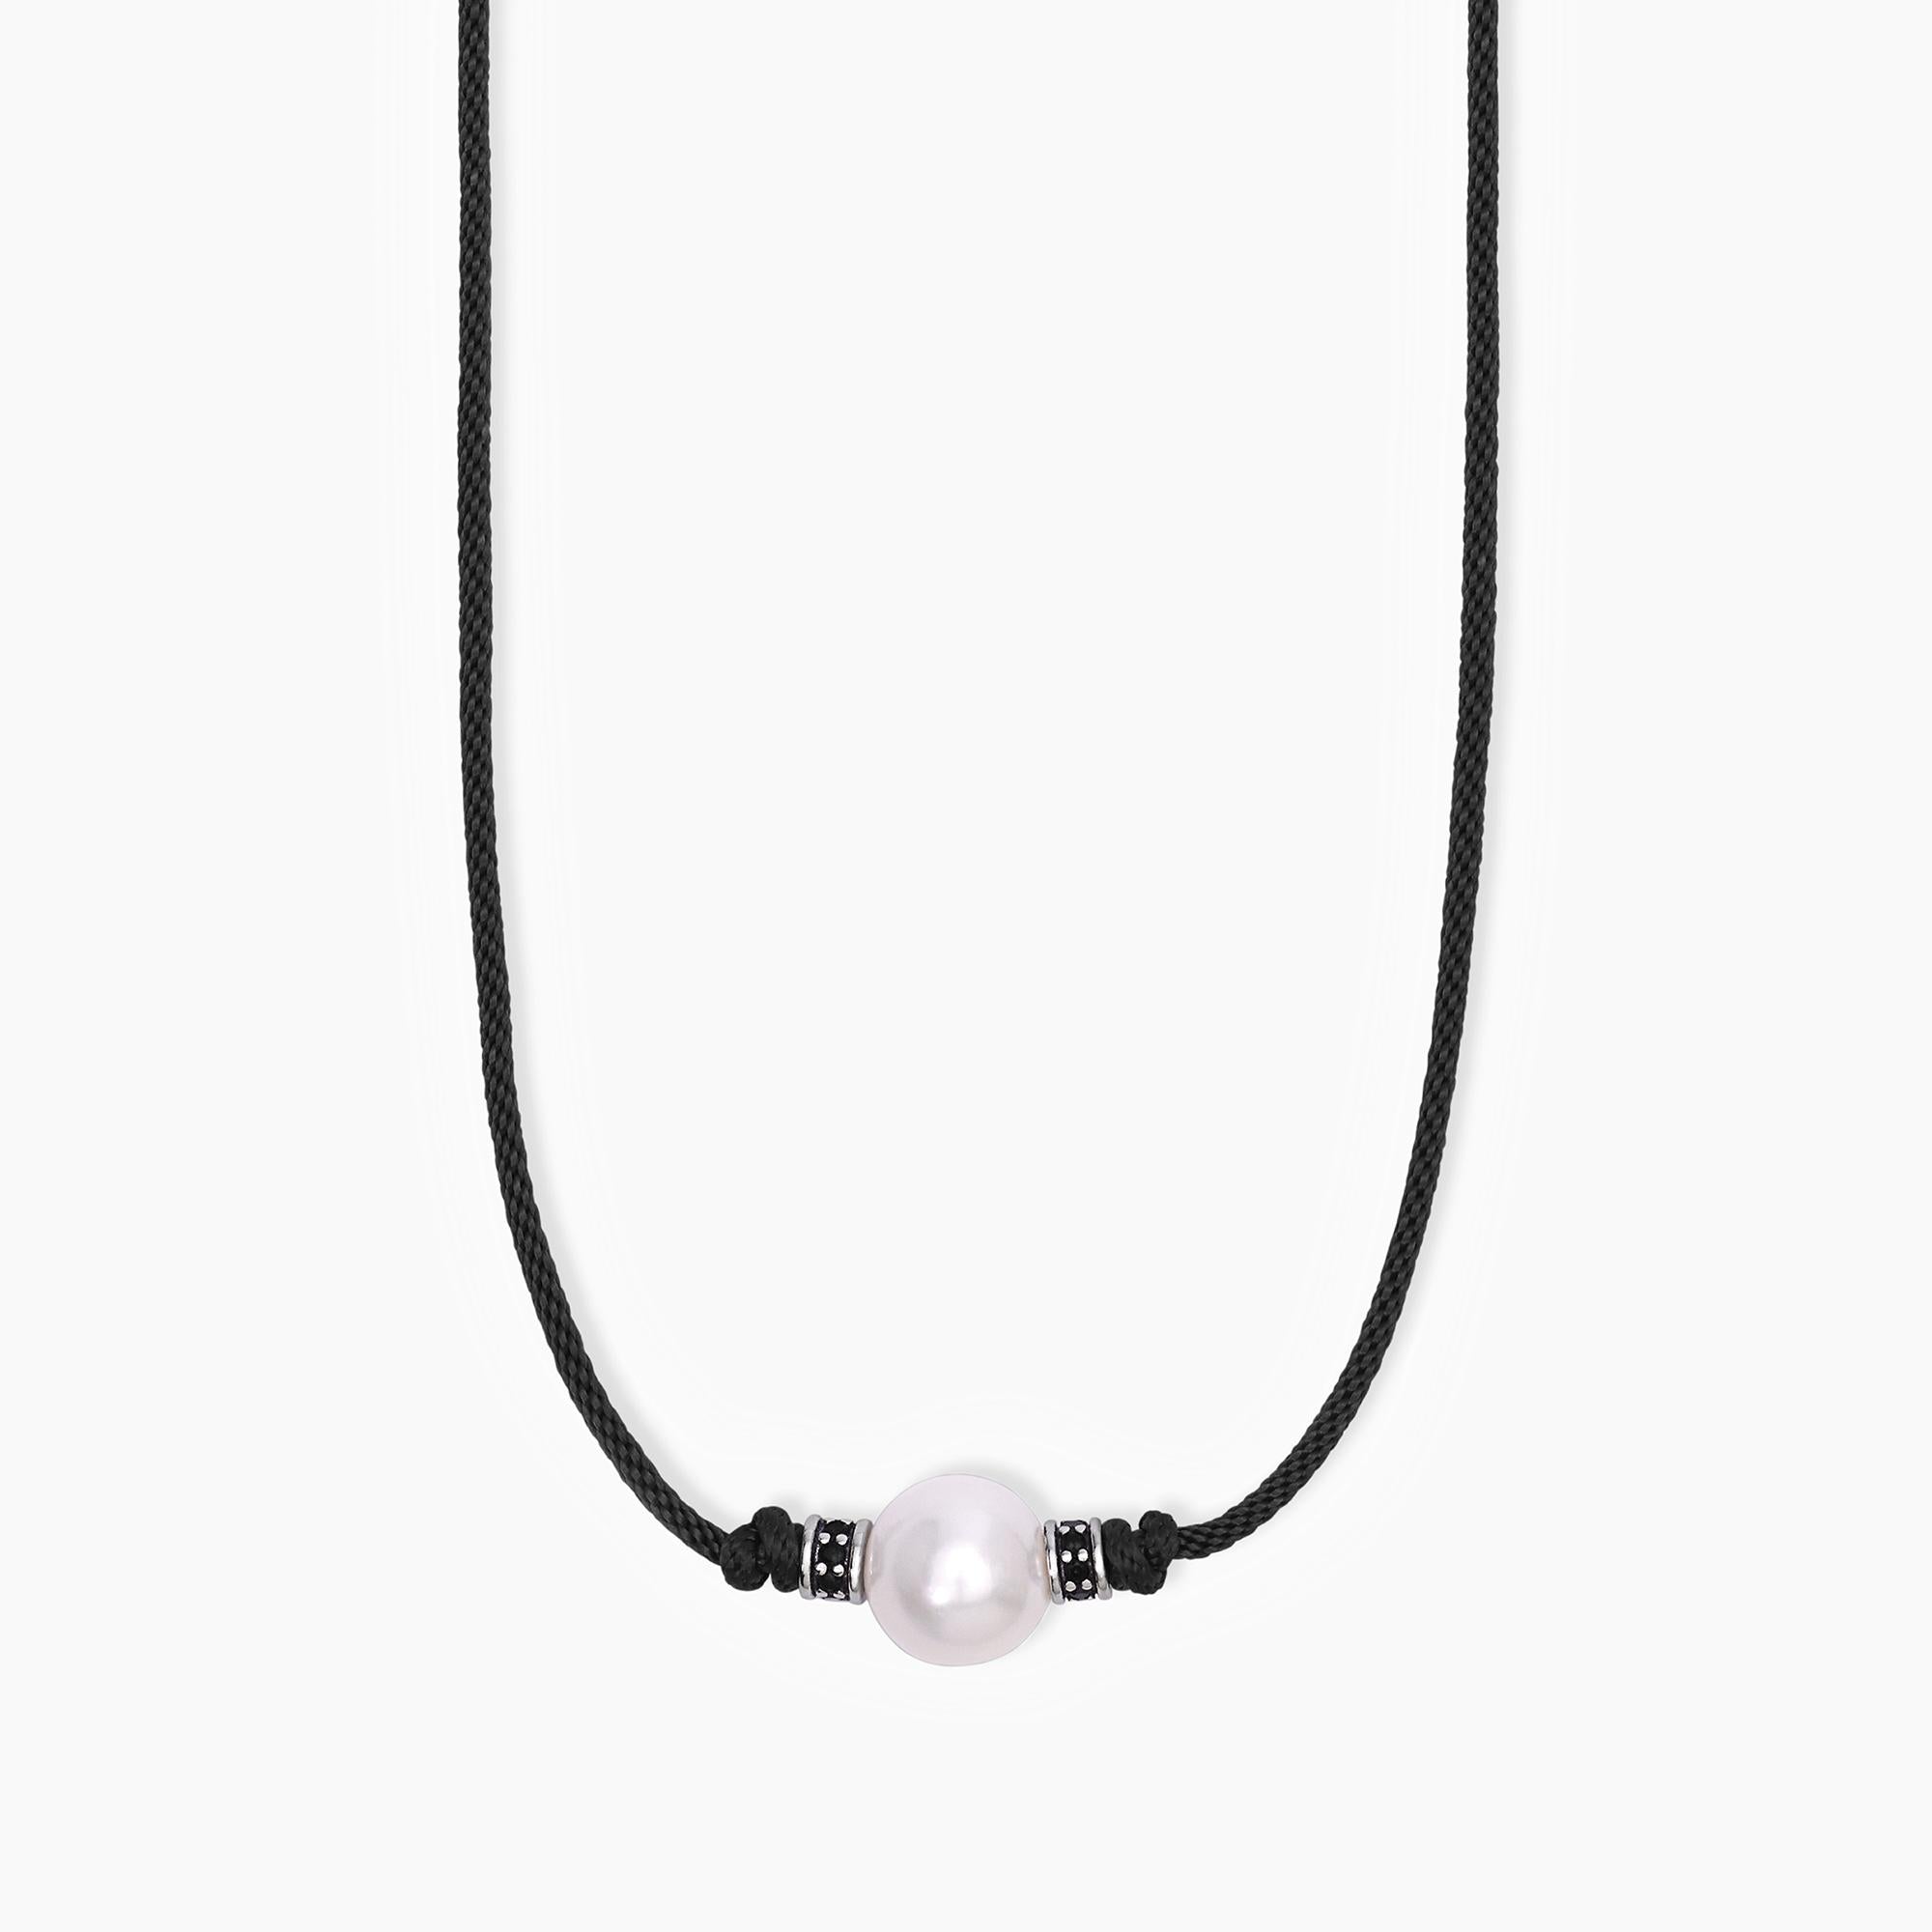 Mabina Uomo - Collana in argento con cordino nero e perla bianca TROPICAL - 553587